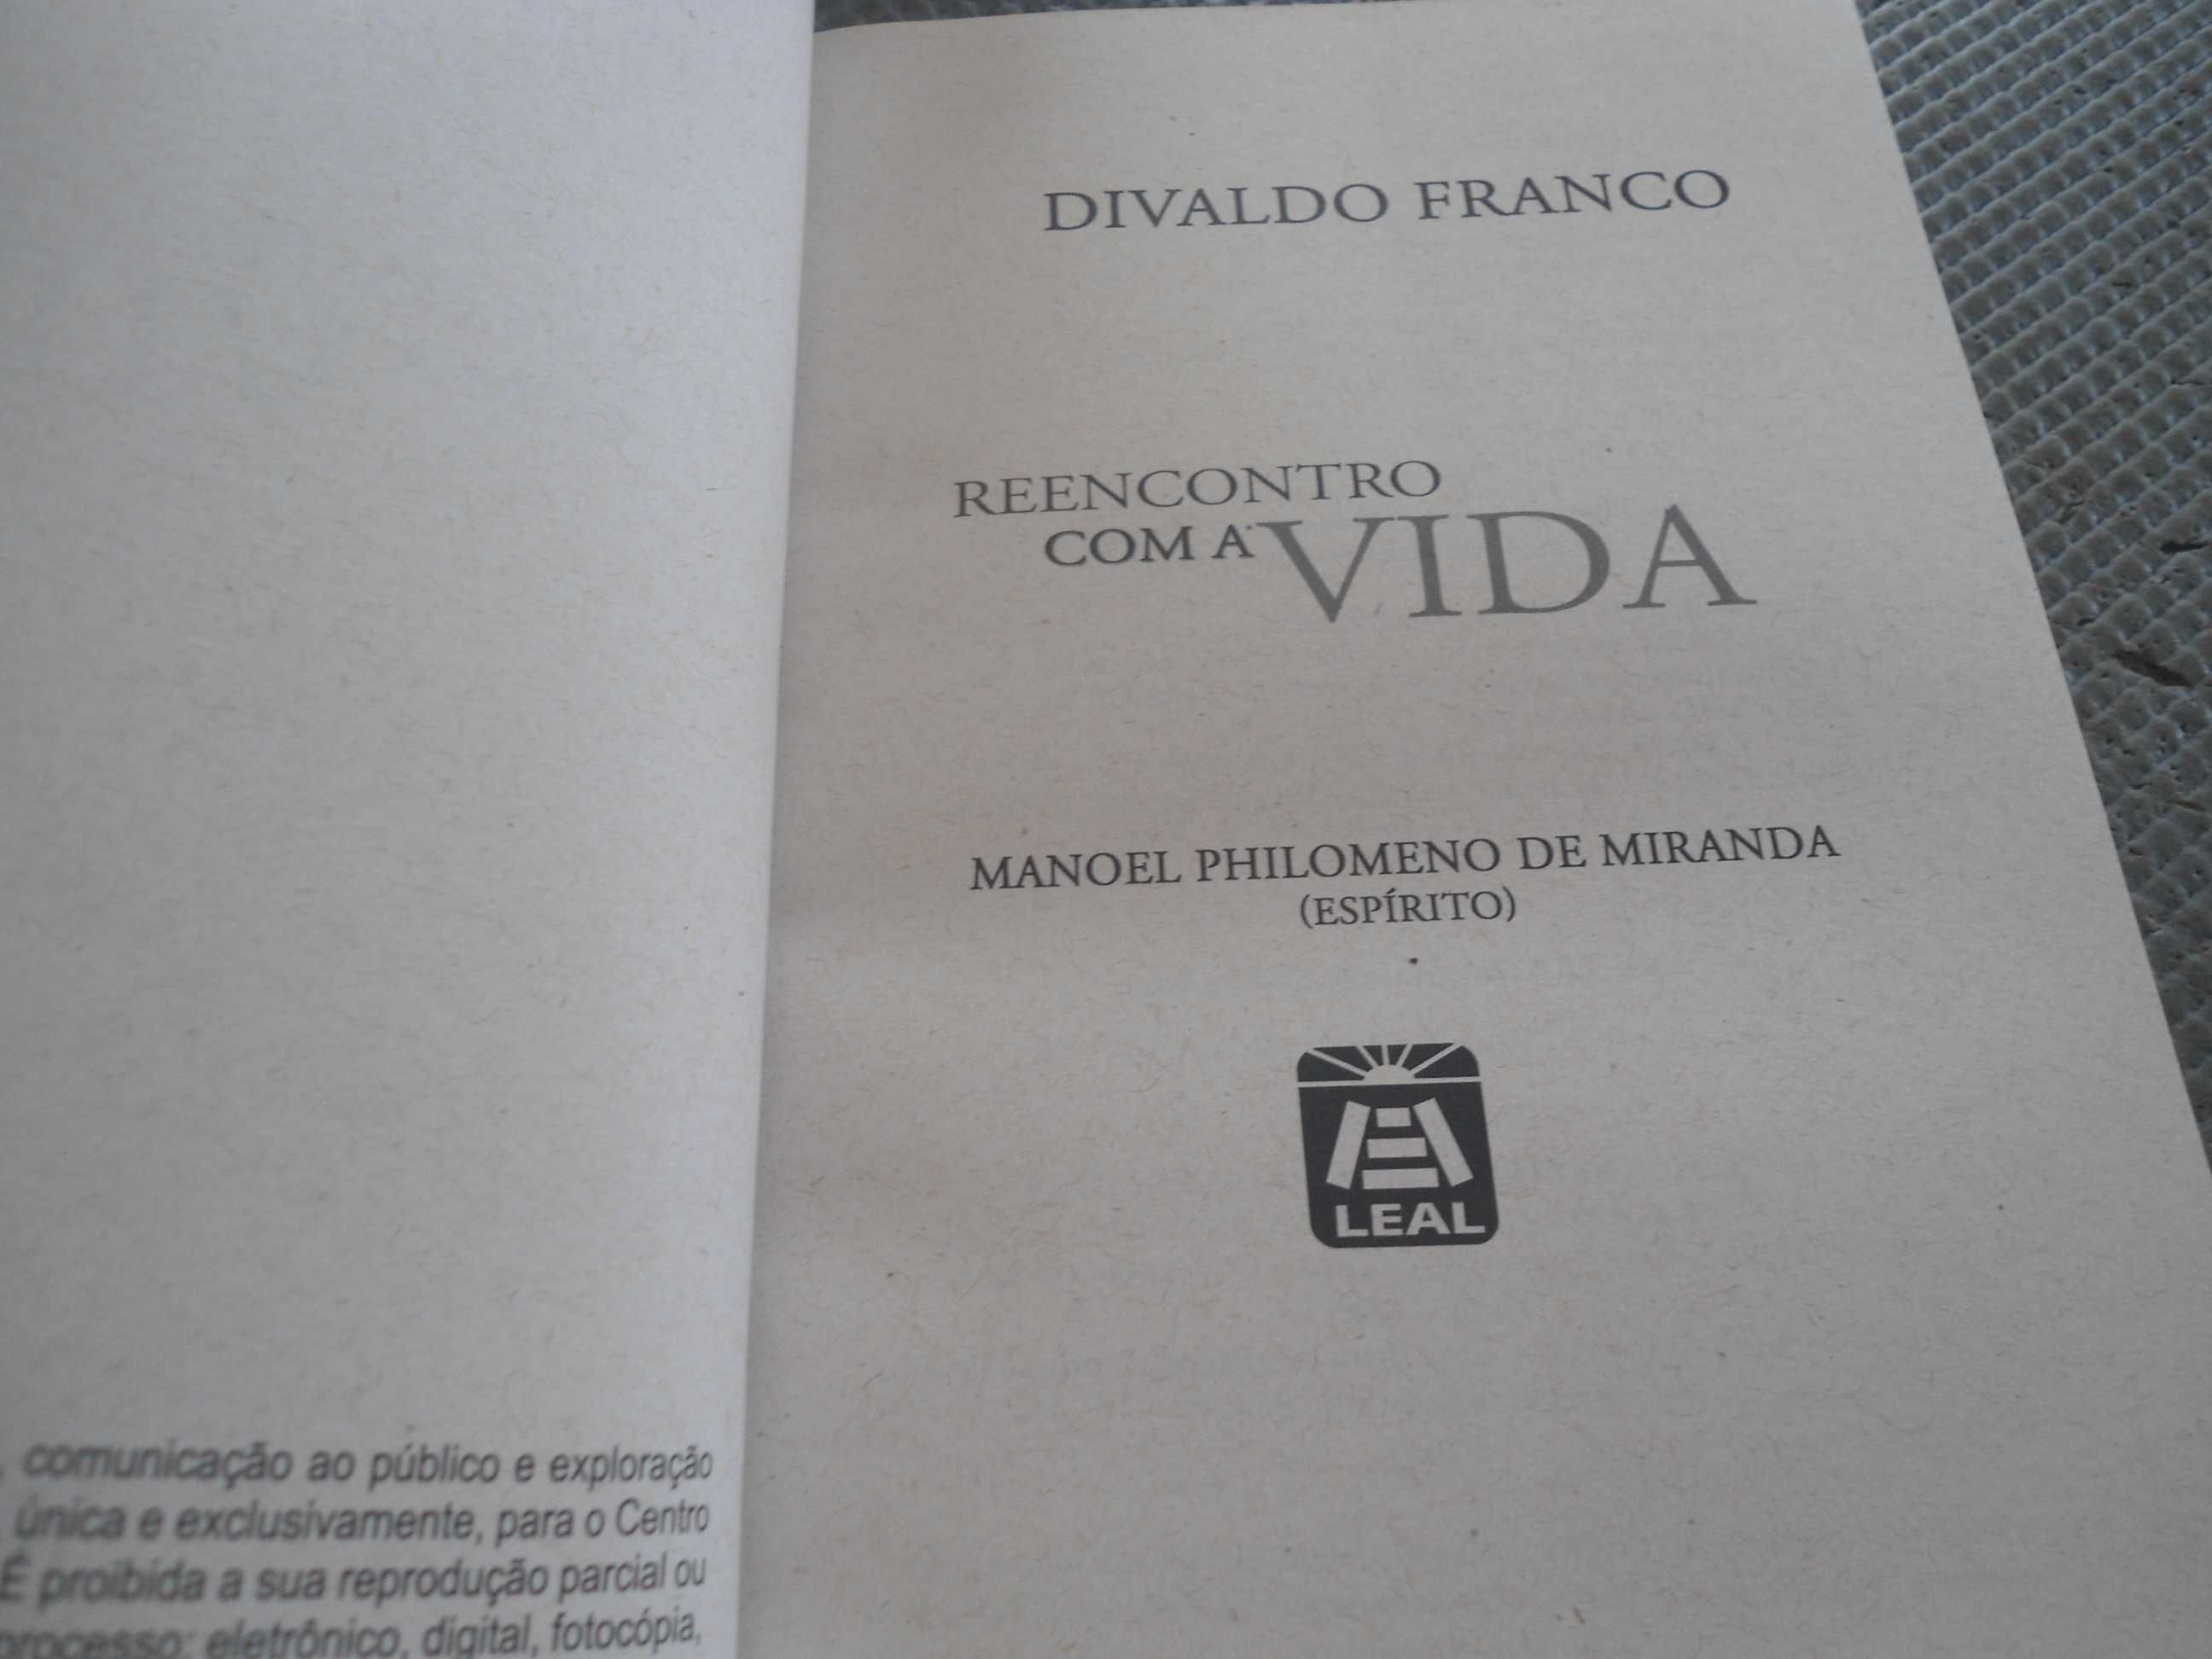 Reencontro com a Vida por Divaldo Franco